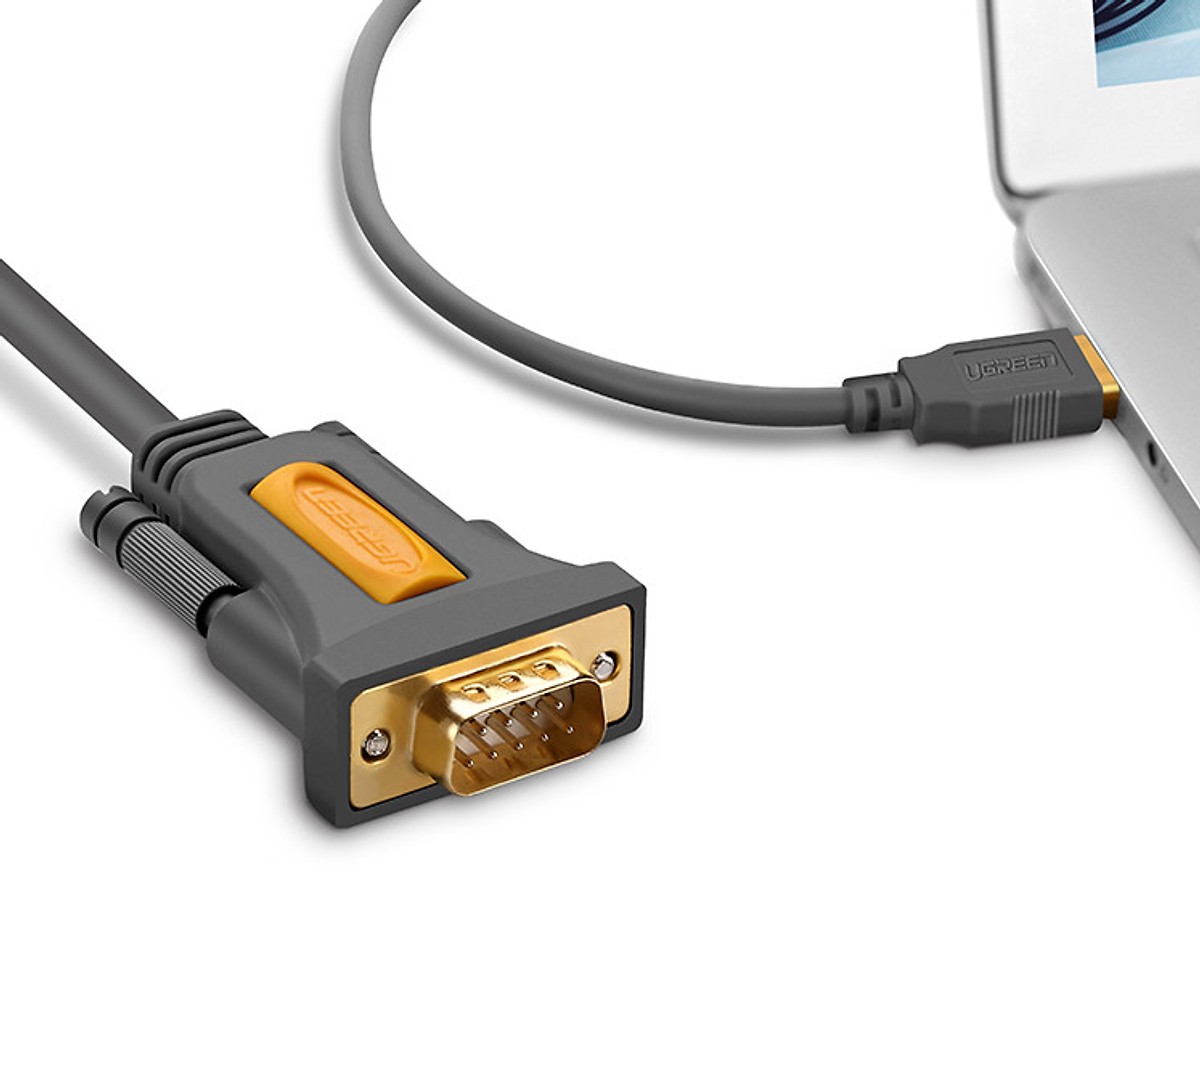 Cáp chuyển đổi USB  2.0 TO Com (RS232) Ugreen 20211 chính hãng